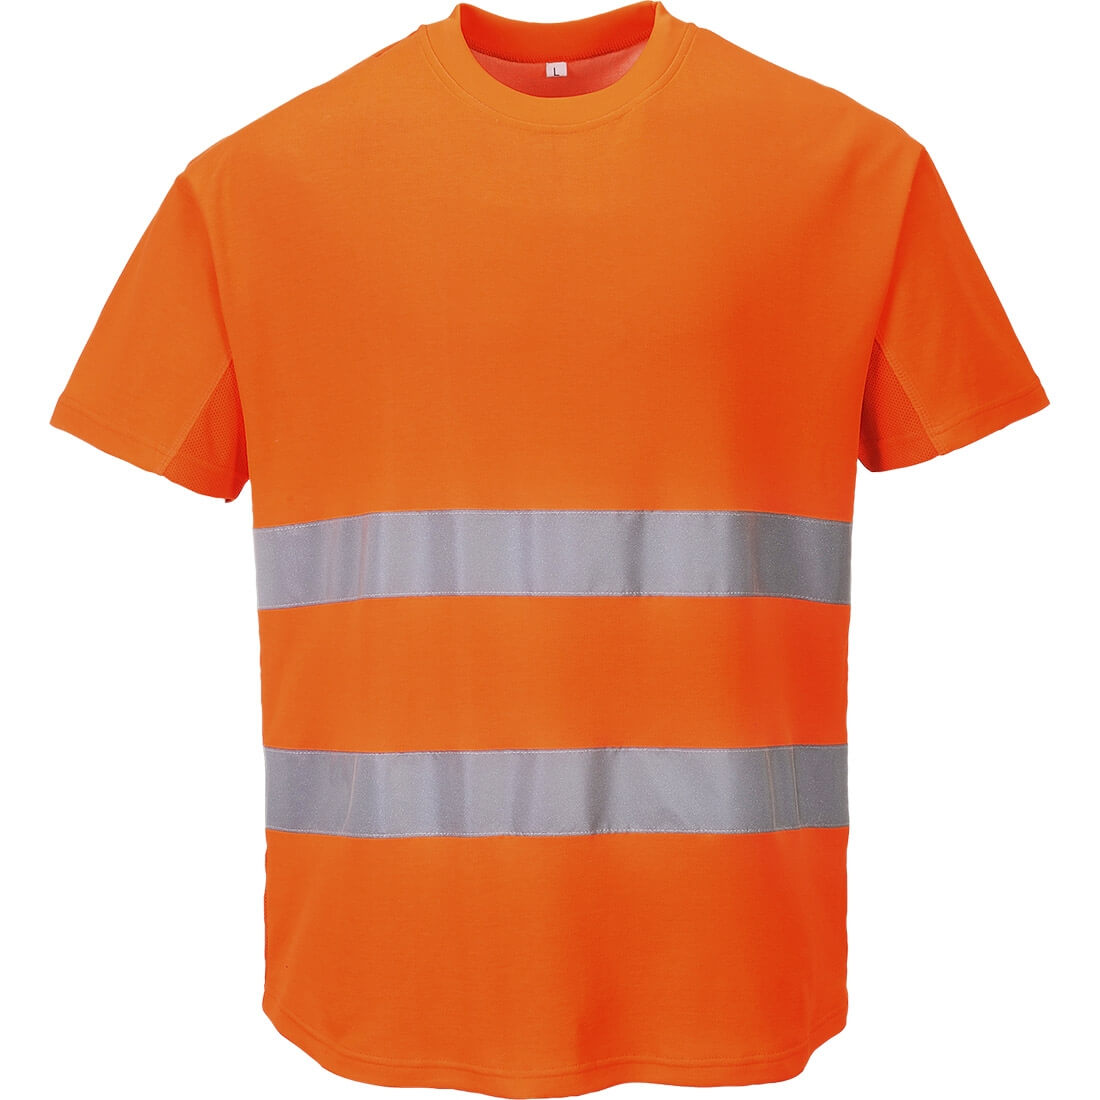 T-shirt aéré - Les vêtements de protection